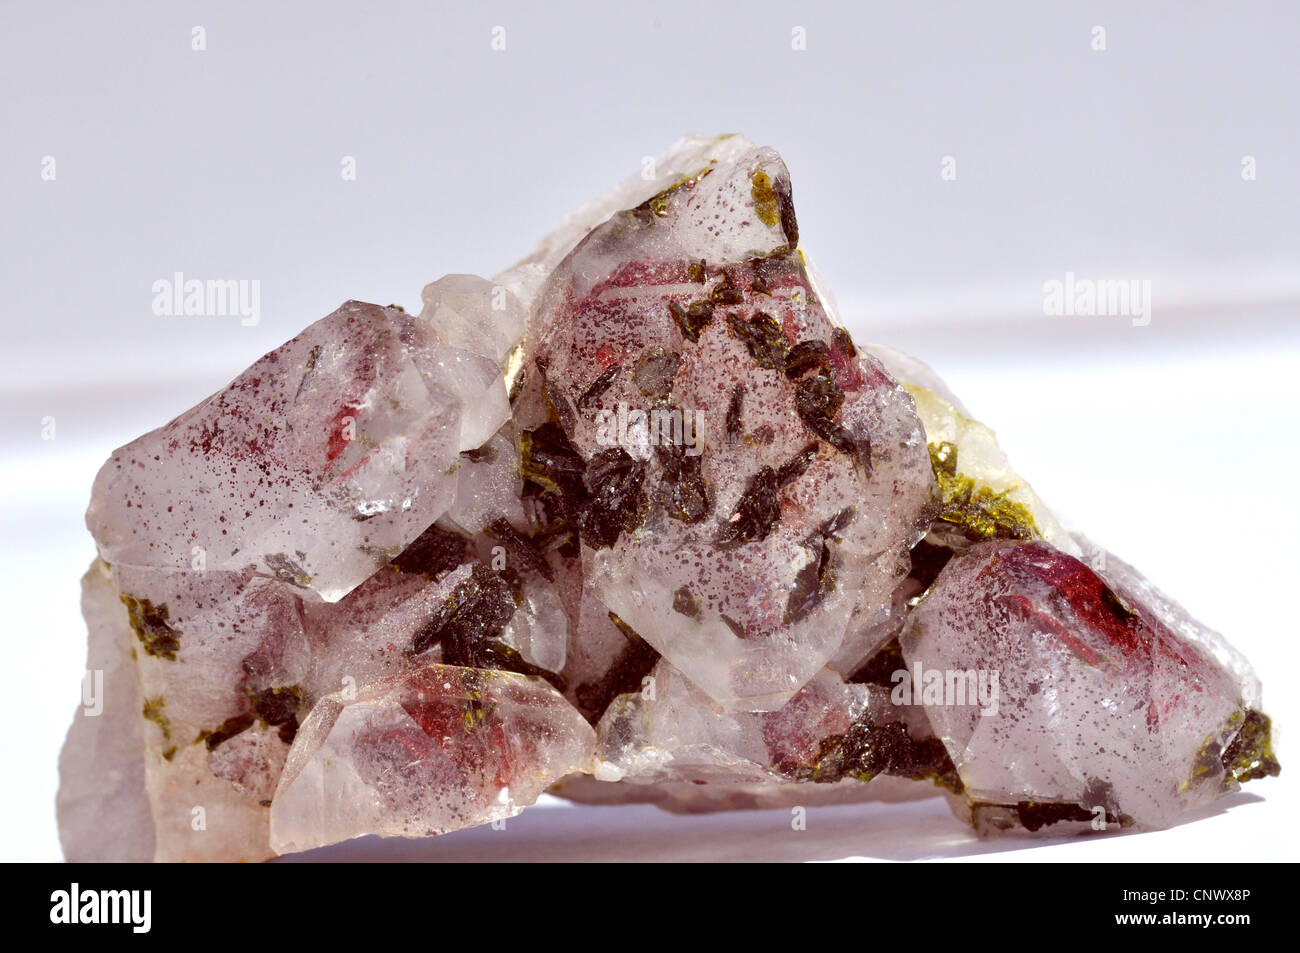 Le cristal de roche avec inclusions de cristaux d'épidote et hématite Banque D'Images